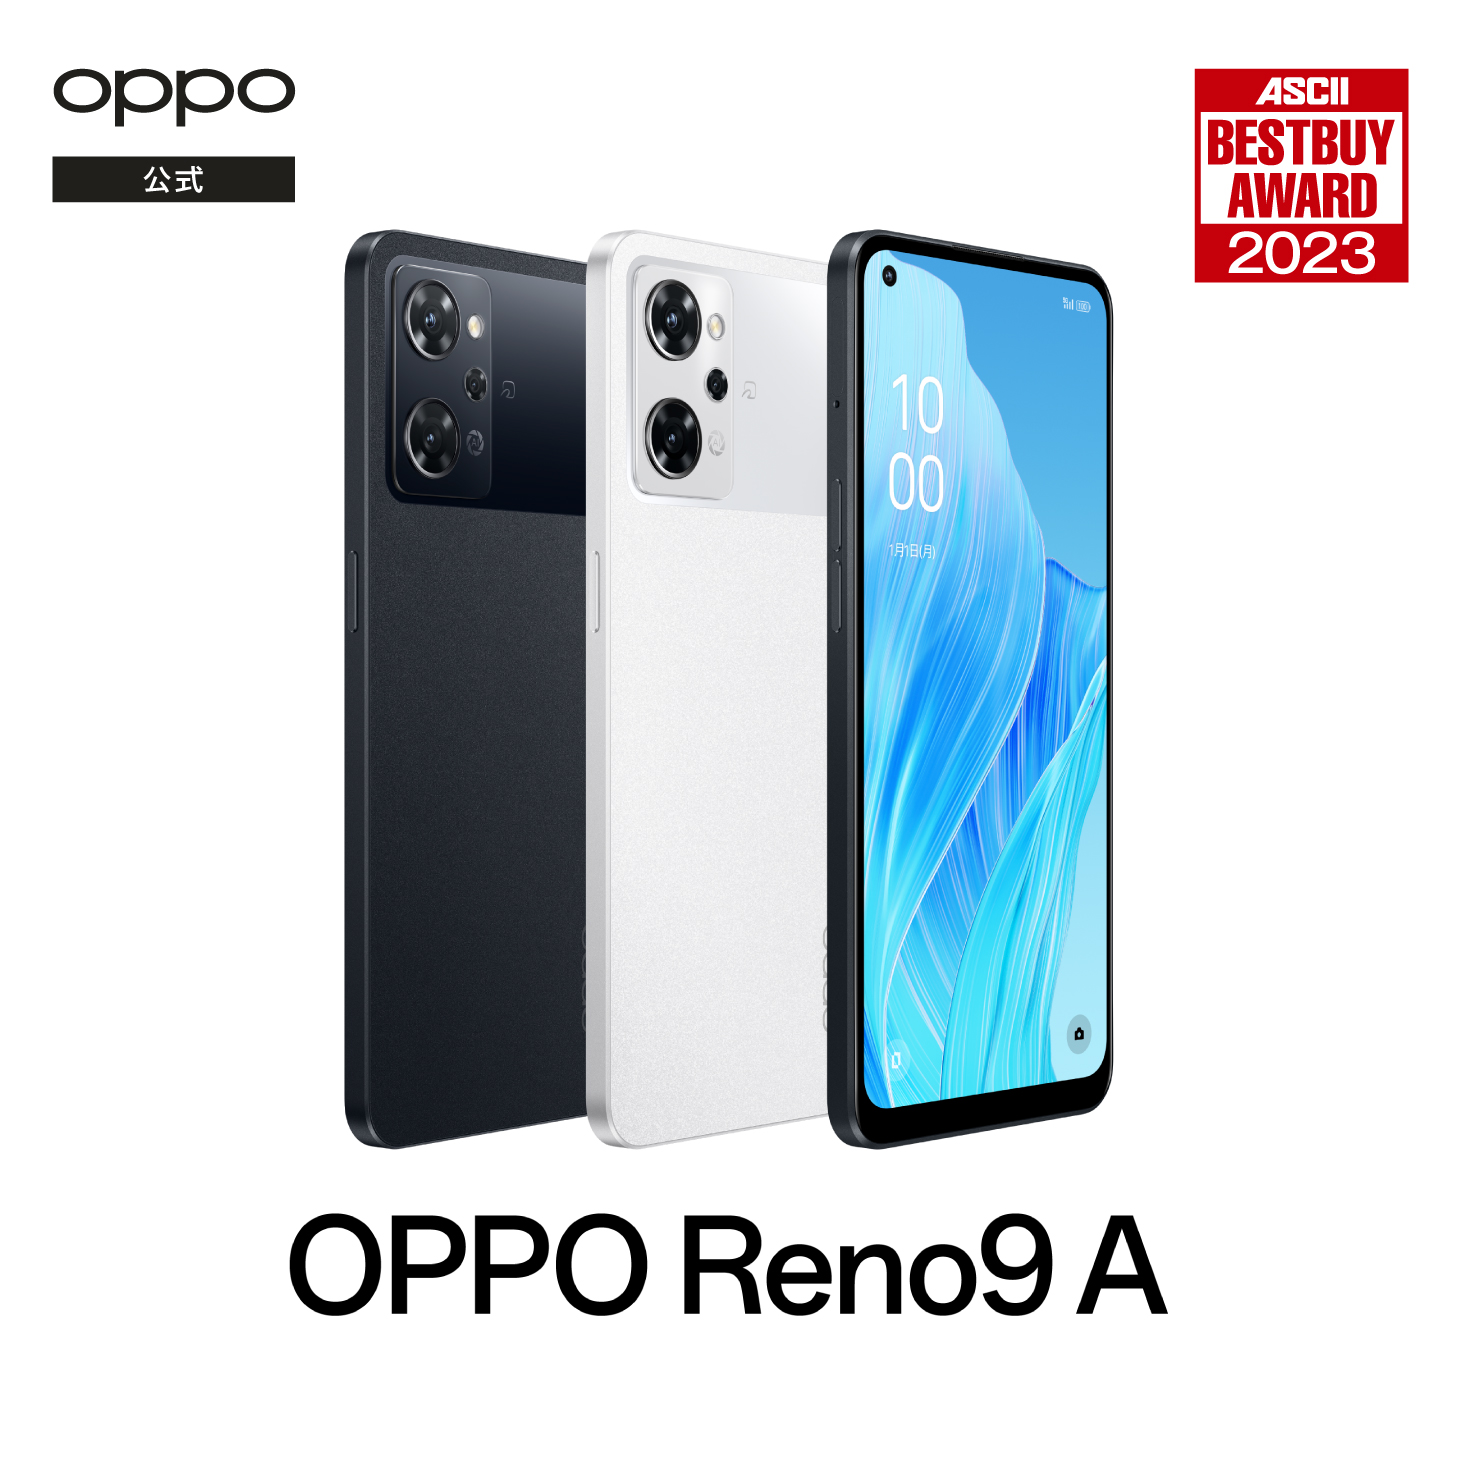 【5/26までボーナスストアP10倍】OPPO Reno9 A SIMフリー 5G スマホ Android 本体 新品 アンドロイド スマートフォン シムフリー 端末 RAM8GB 防水